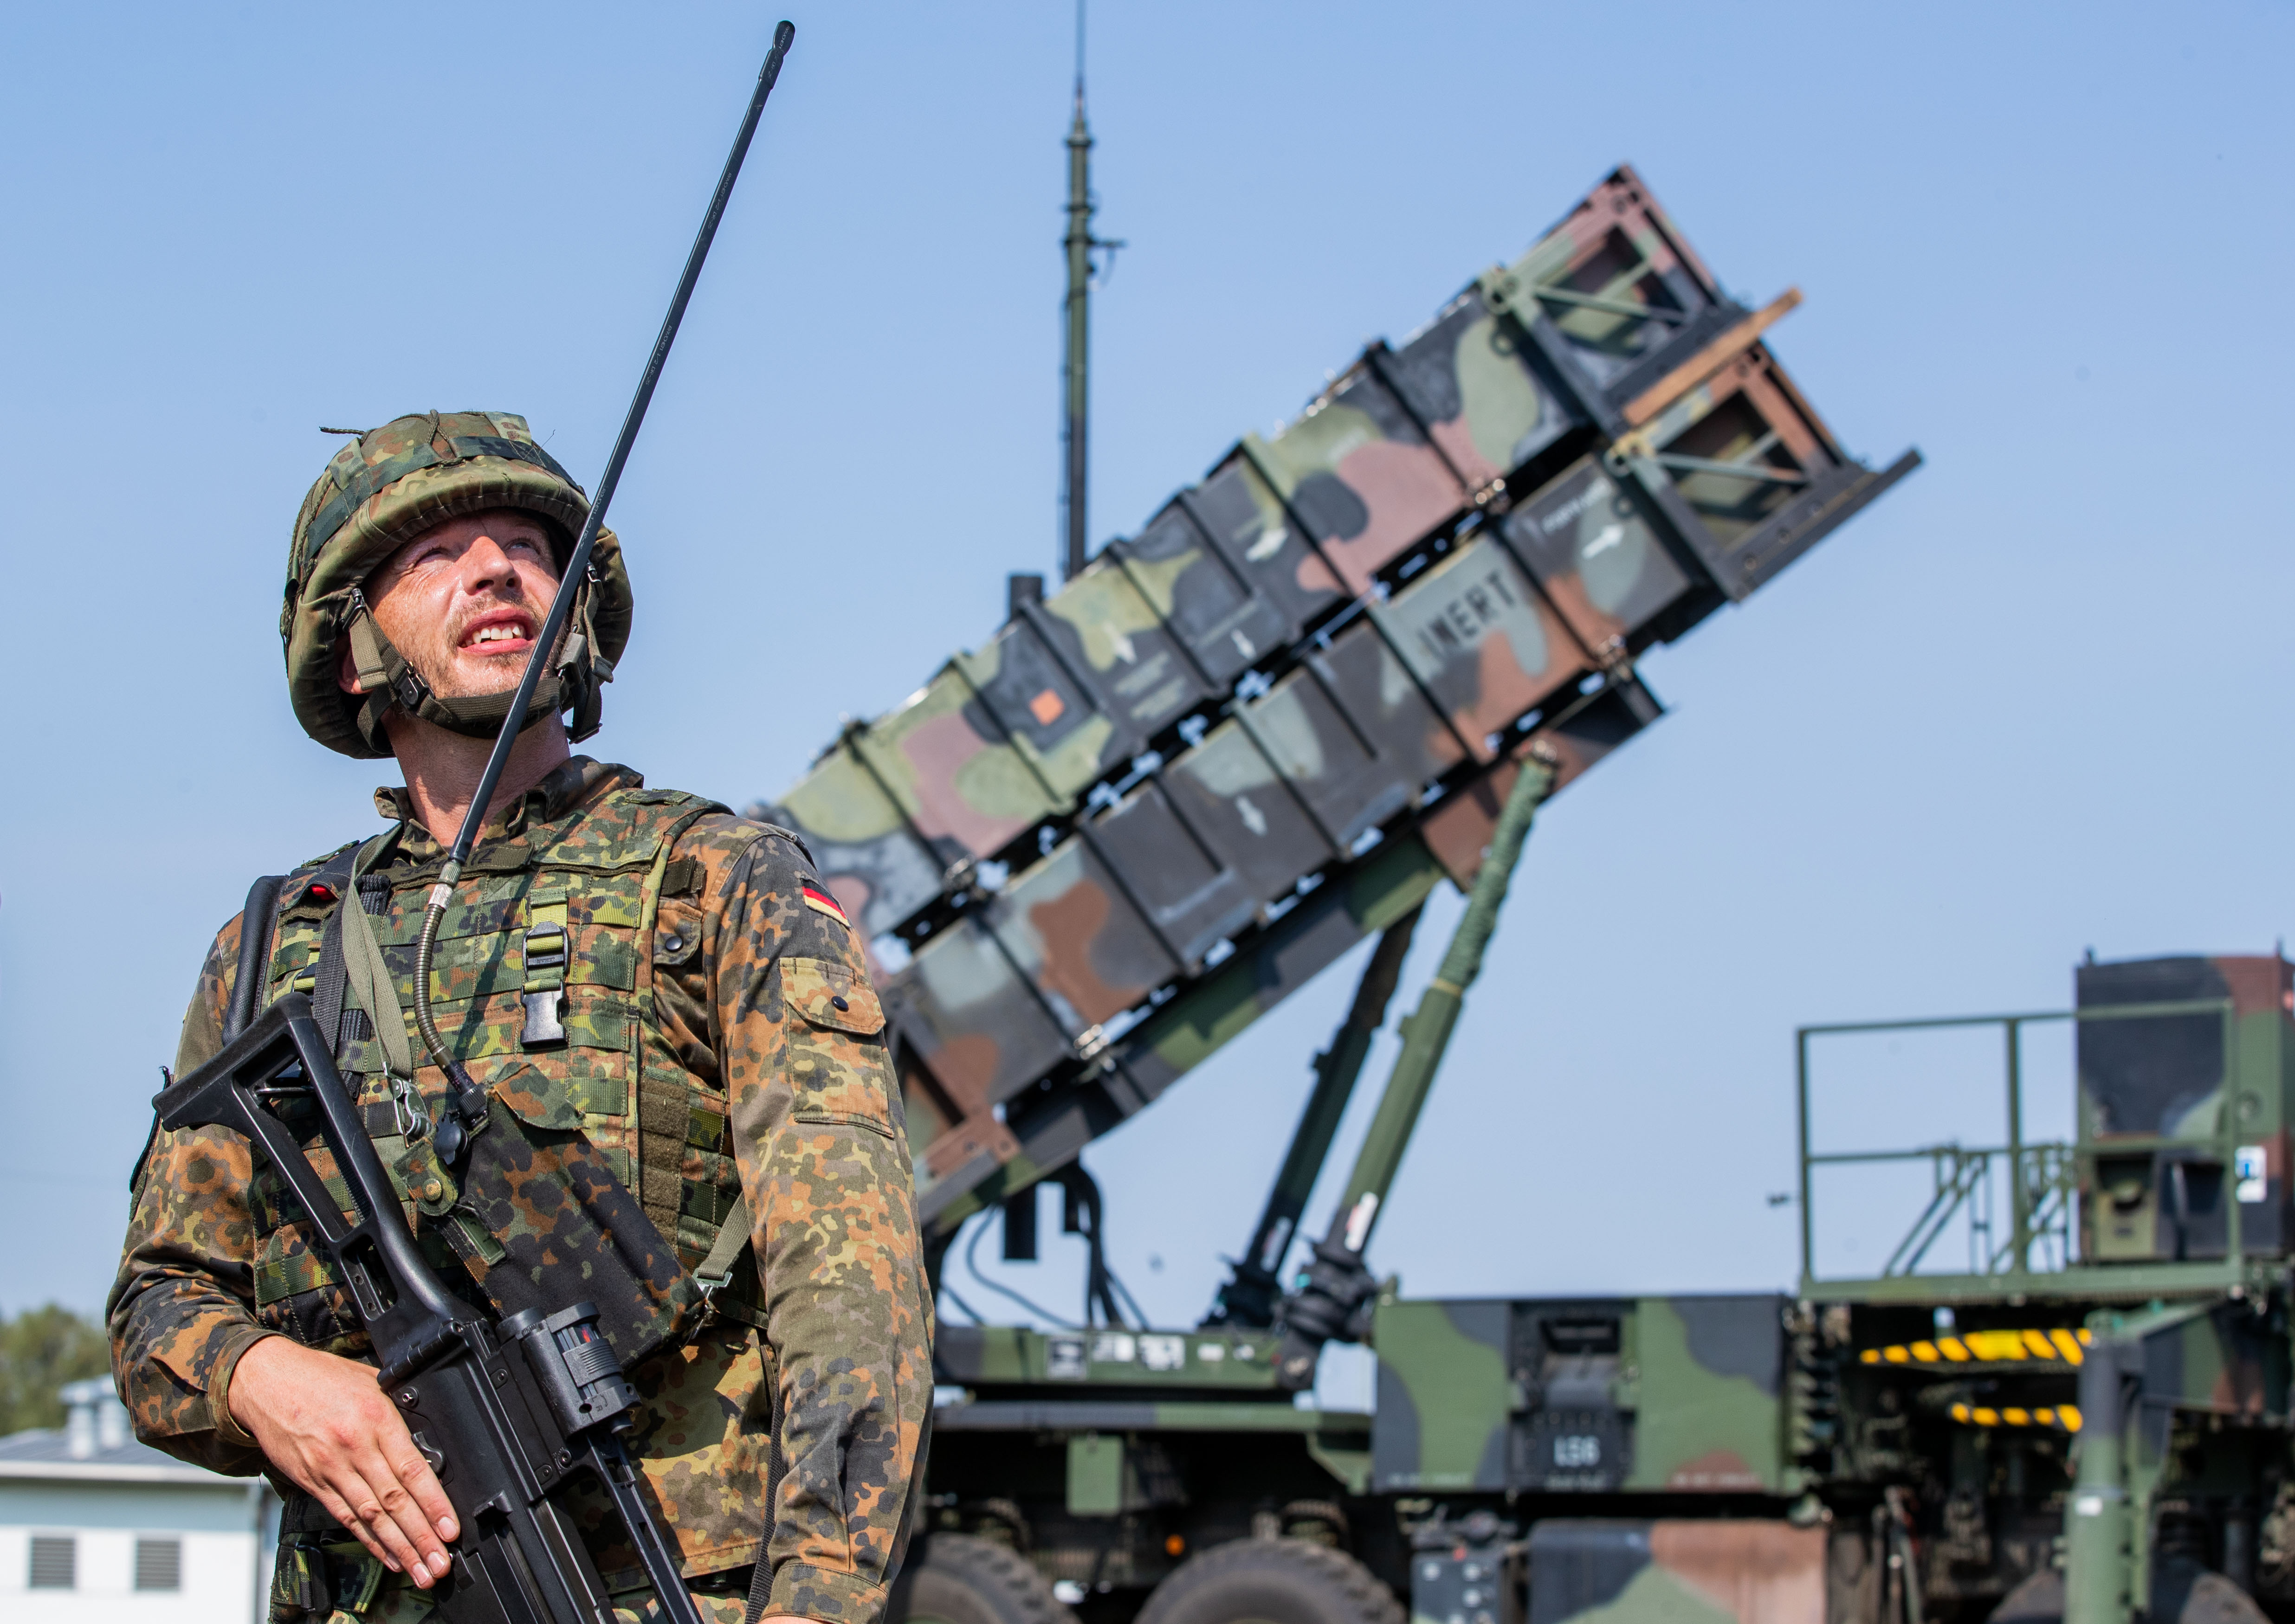 Aufrüstung - Braucht Deutschland einen Raketenabwehrschild?